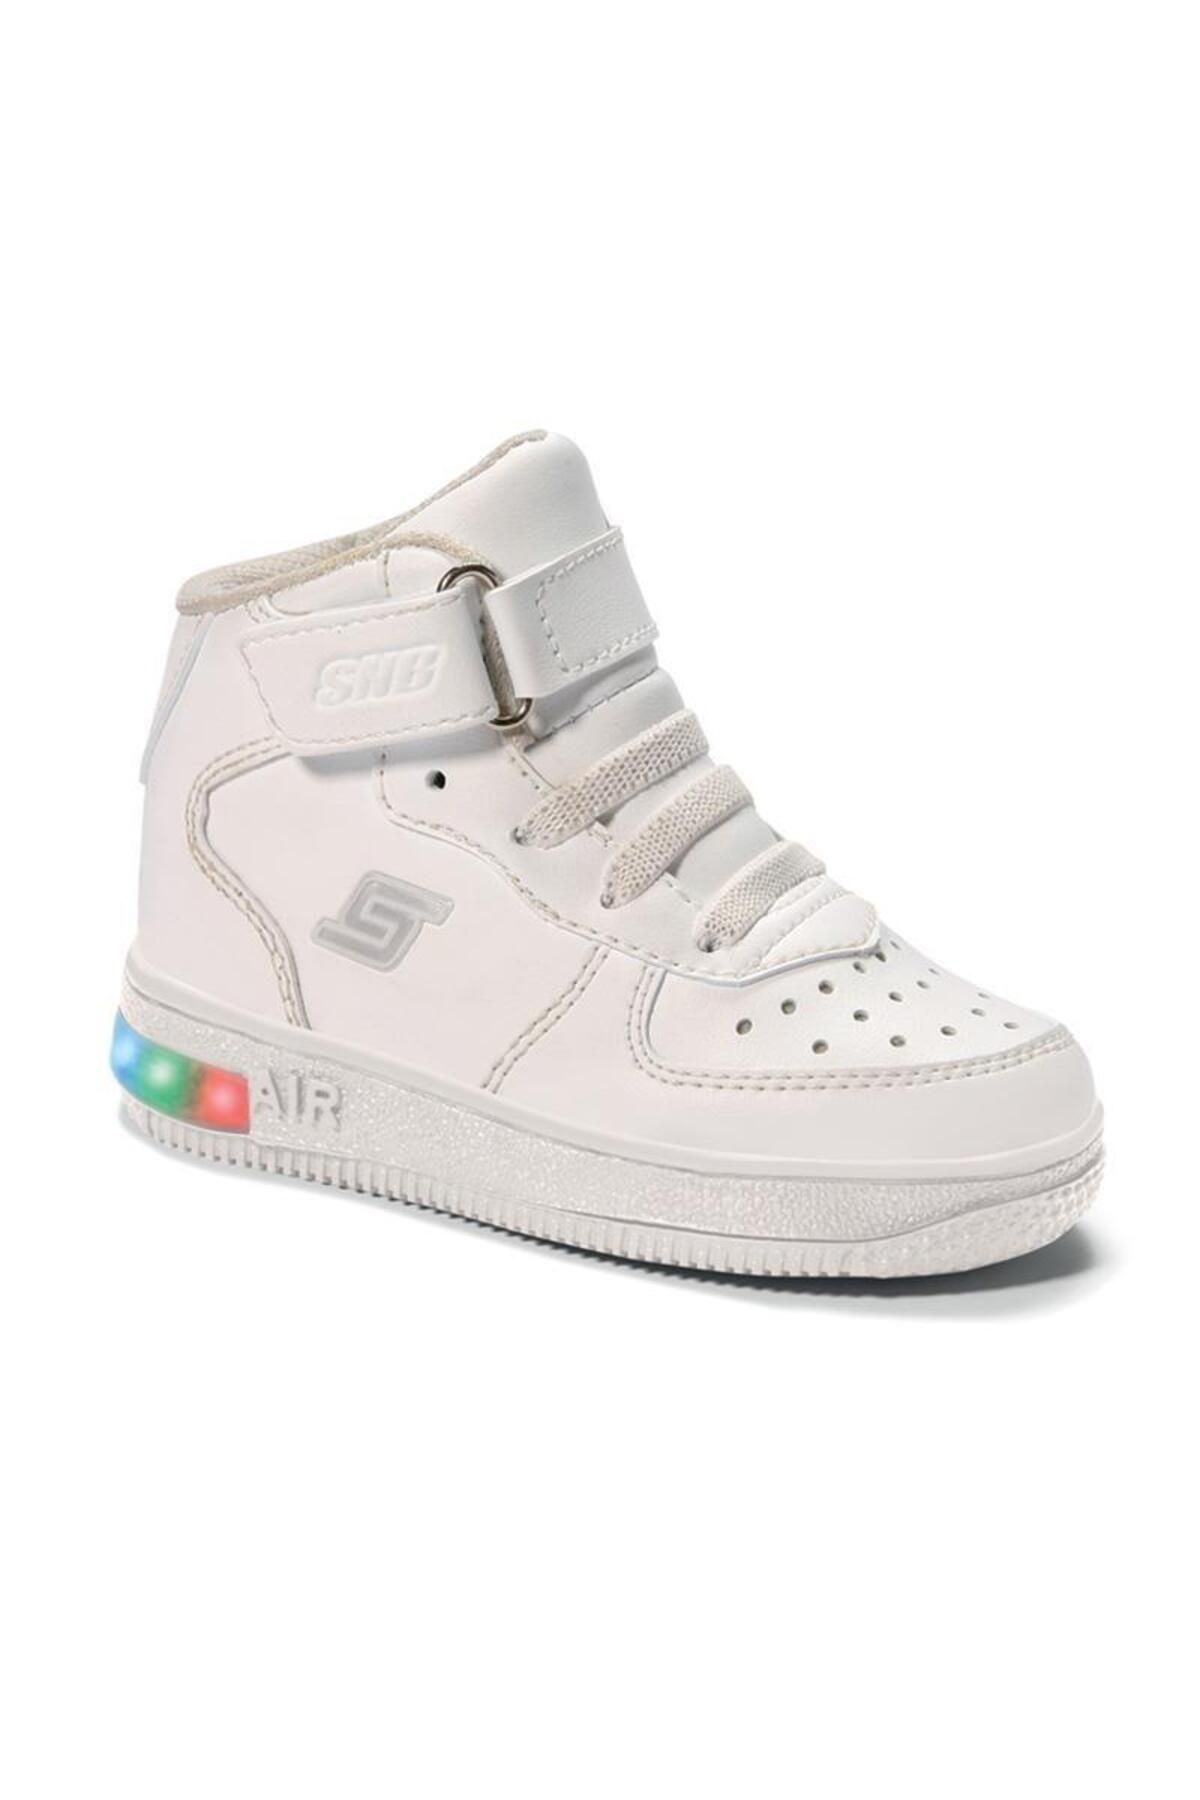 Sanbe 9304 Unisex Bebek Beyaz Işıklı Bilekli Sneaker